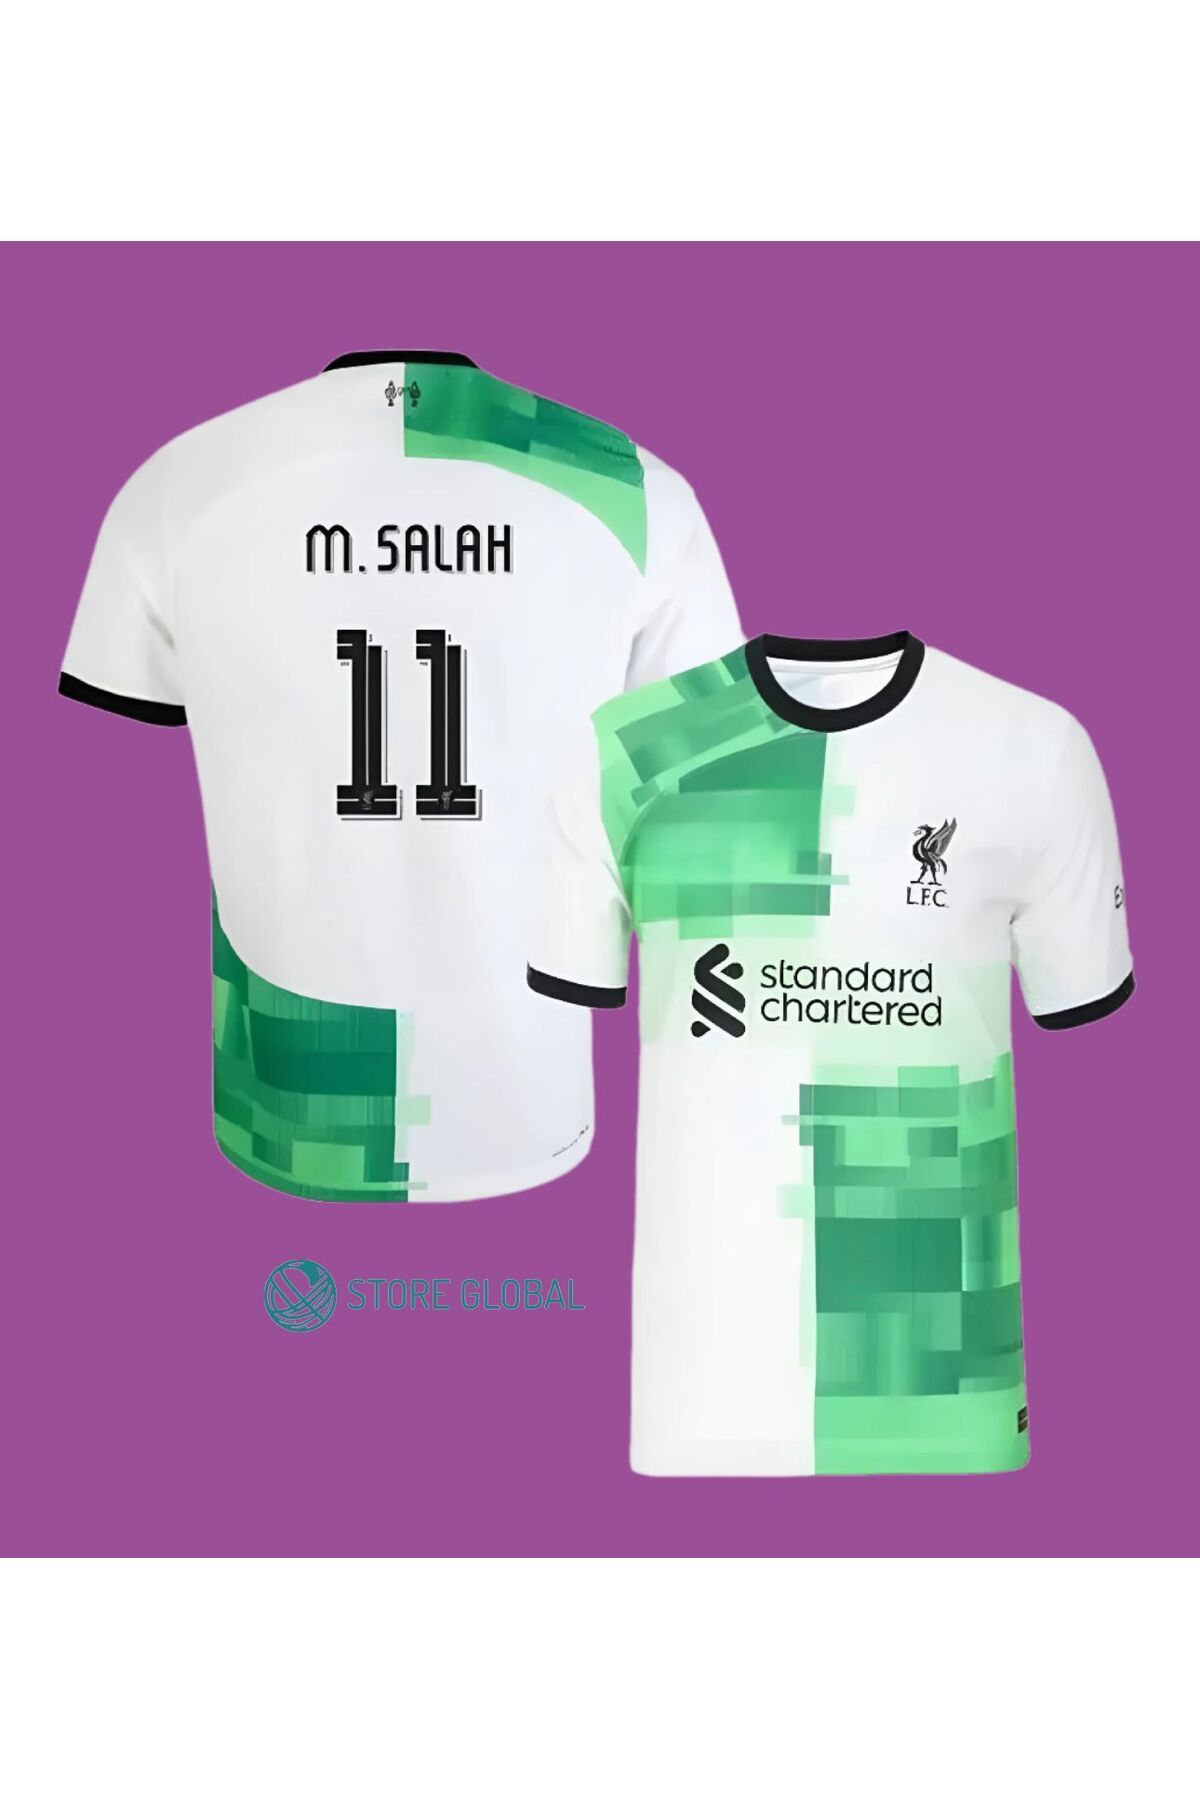 ZİLONG Liverpool Muhammed Salah 11 Yeni Sezon Deplasman Yetişin Forması